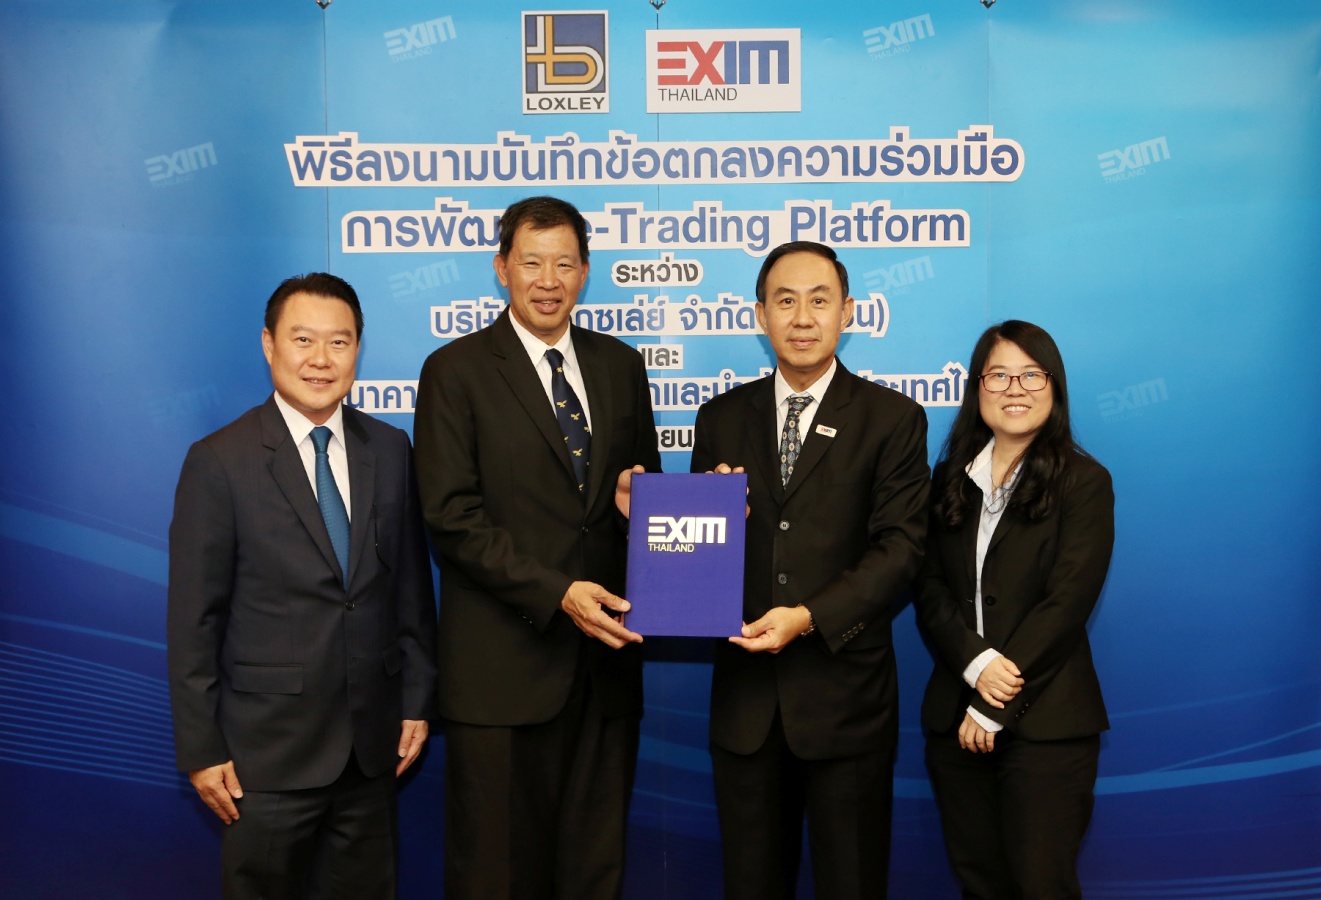 EXIM BANK จับมือ บมจ.ล็อกซเล่ย์ พัฒนาช่องทางสนับสนุนการค้าออนไลน์